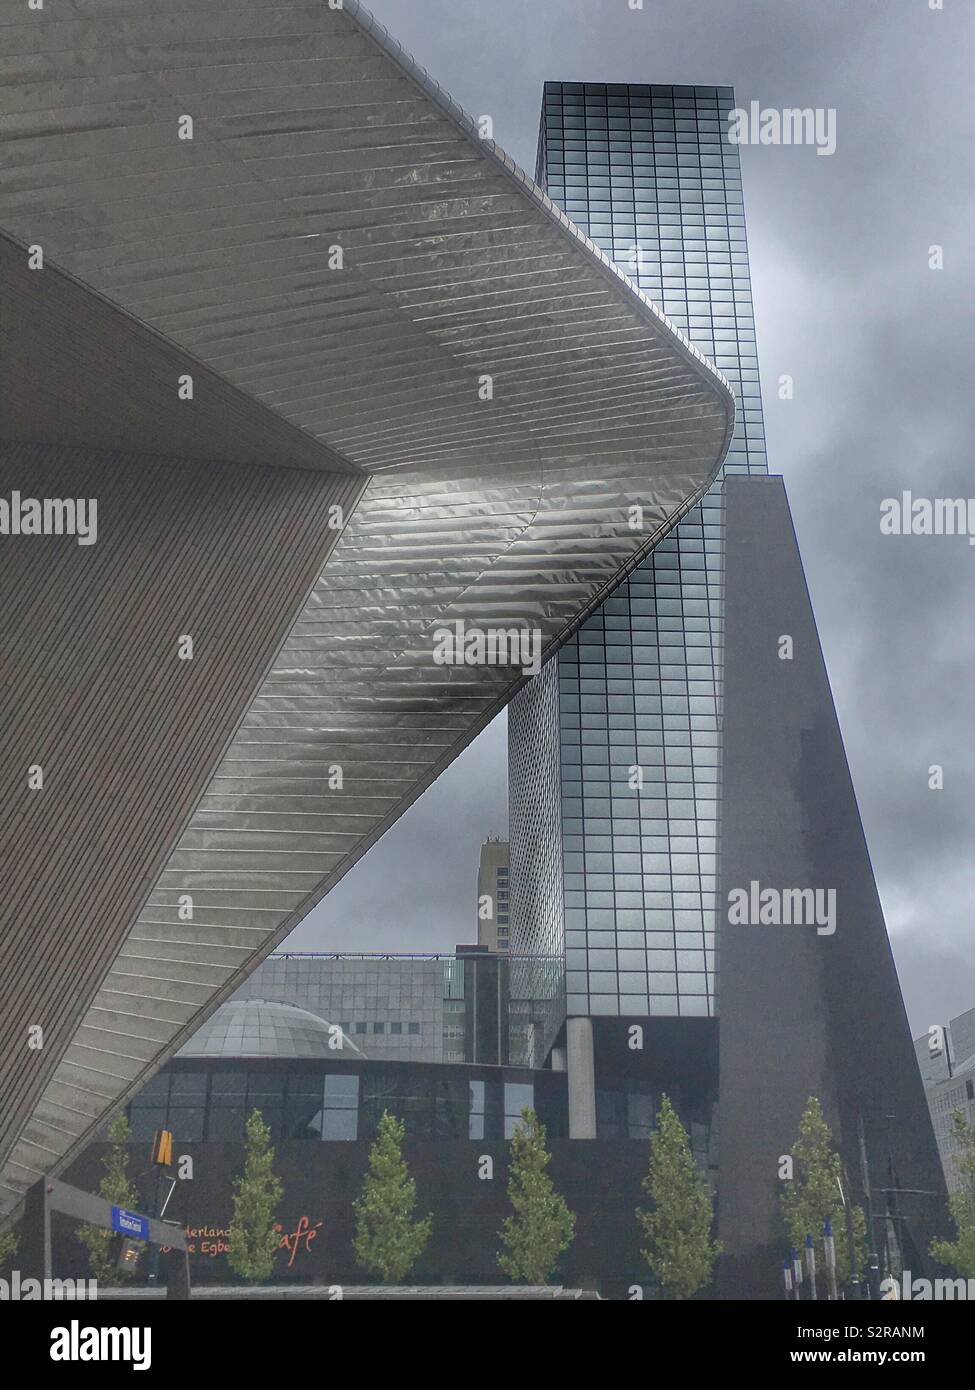 Nuova architettura alla Stazione Centrale di Rotterdam (Rotterdam Centraal), la principale stazione ferroviaria della città di Rotterdam nei Paesi Bassi. Foto Stock